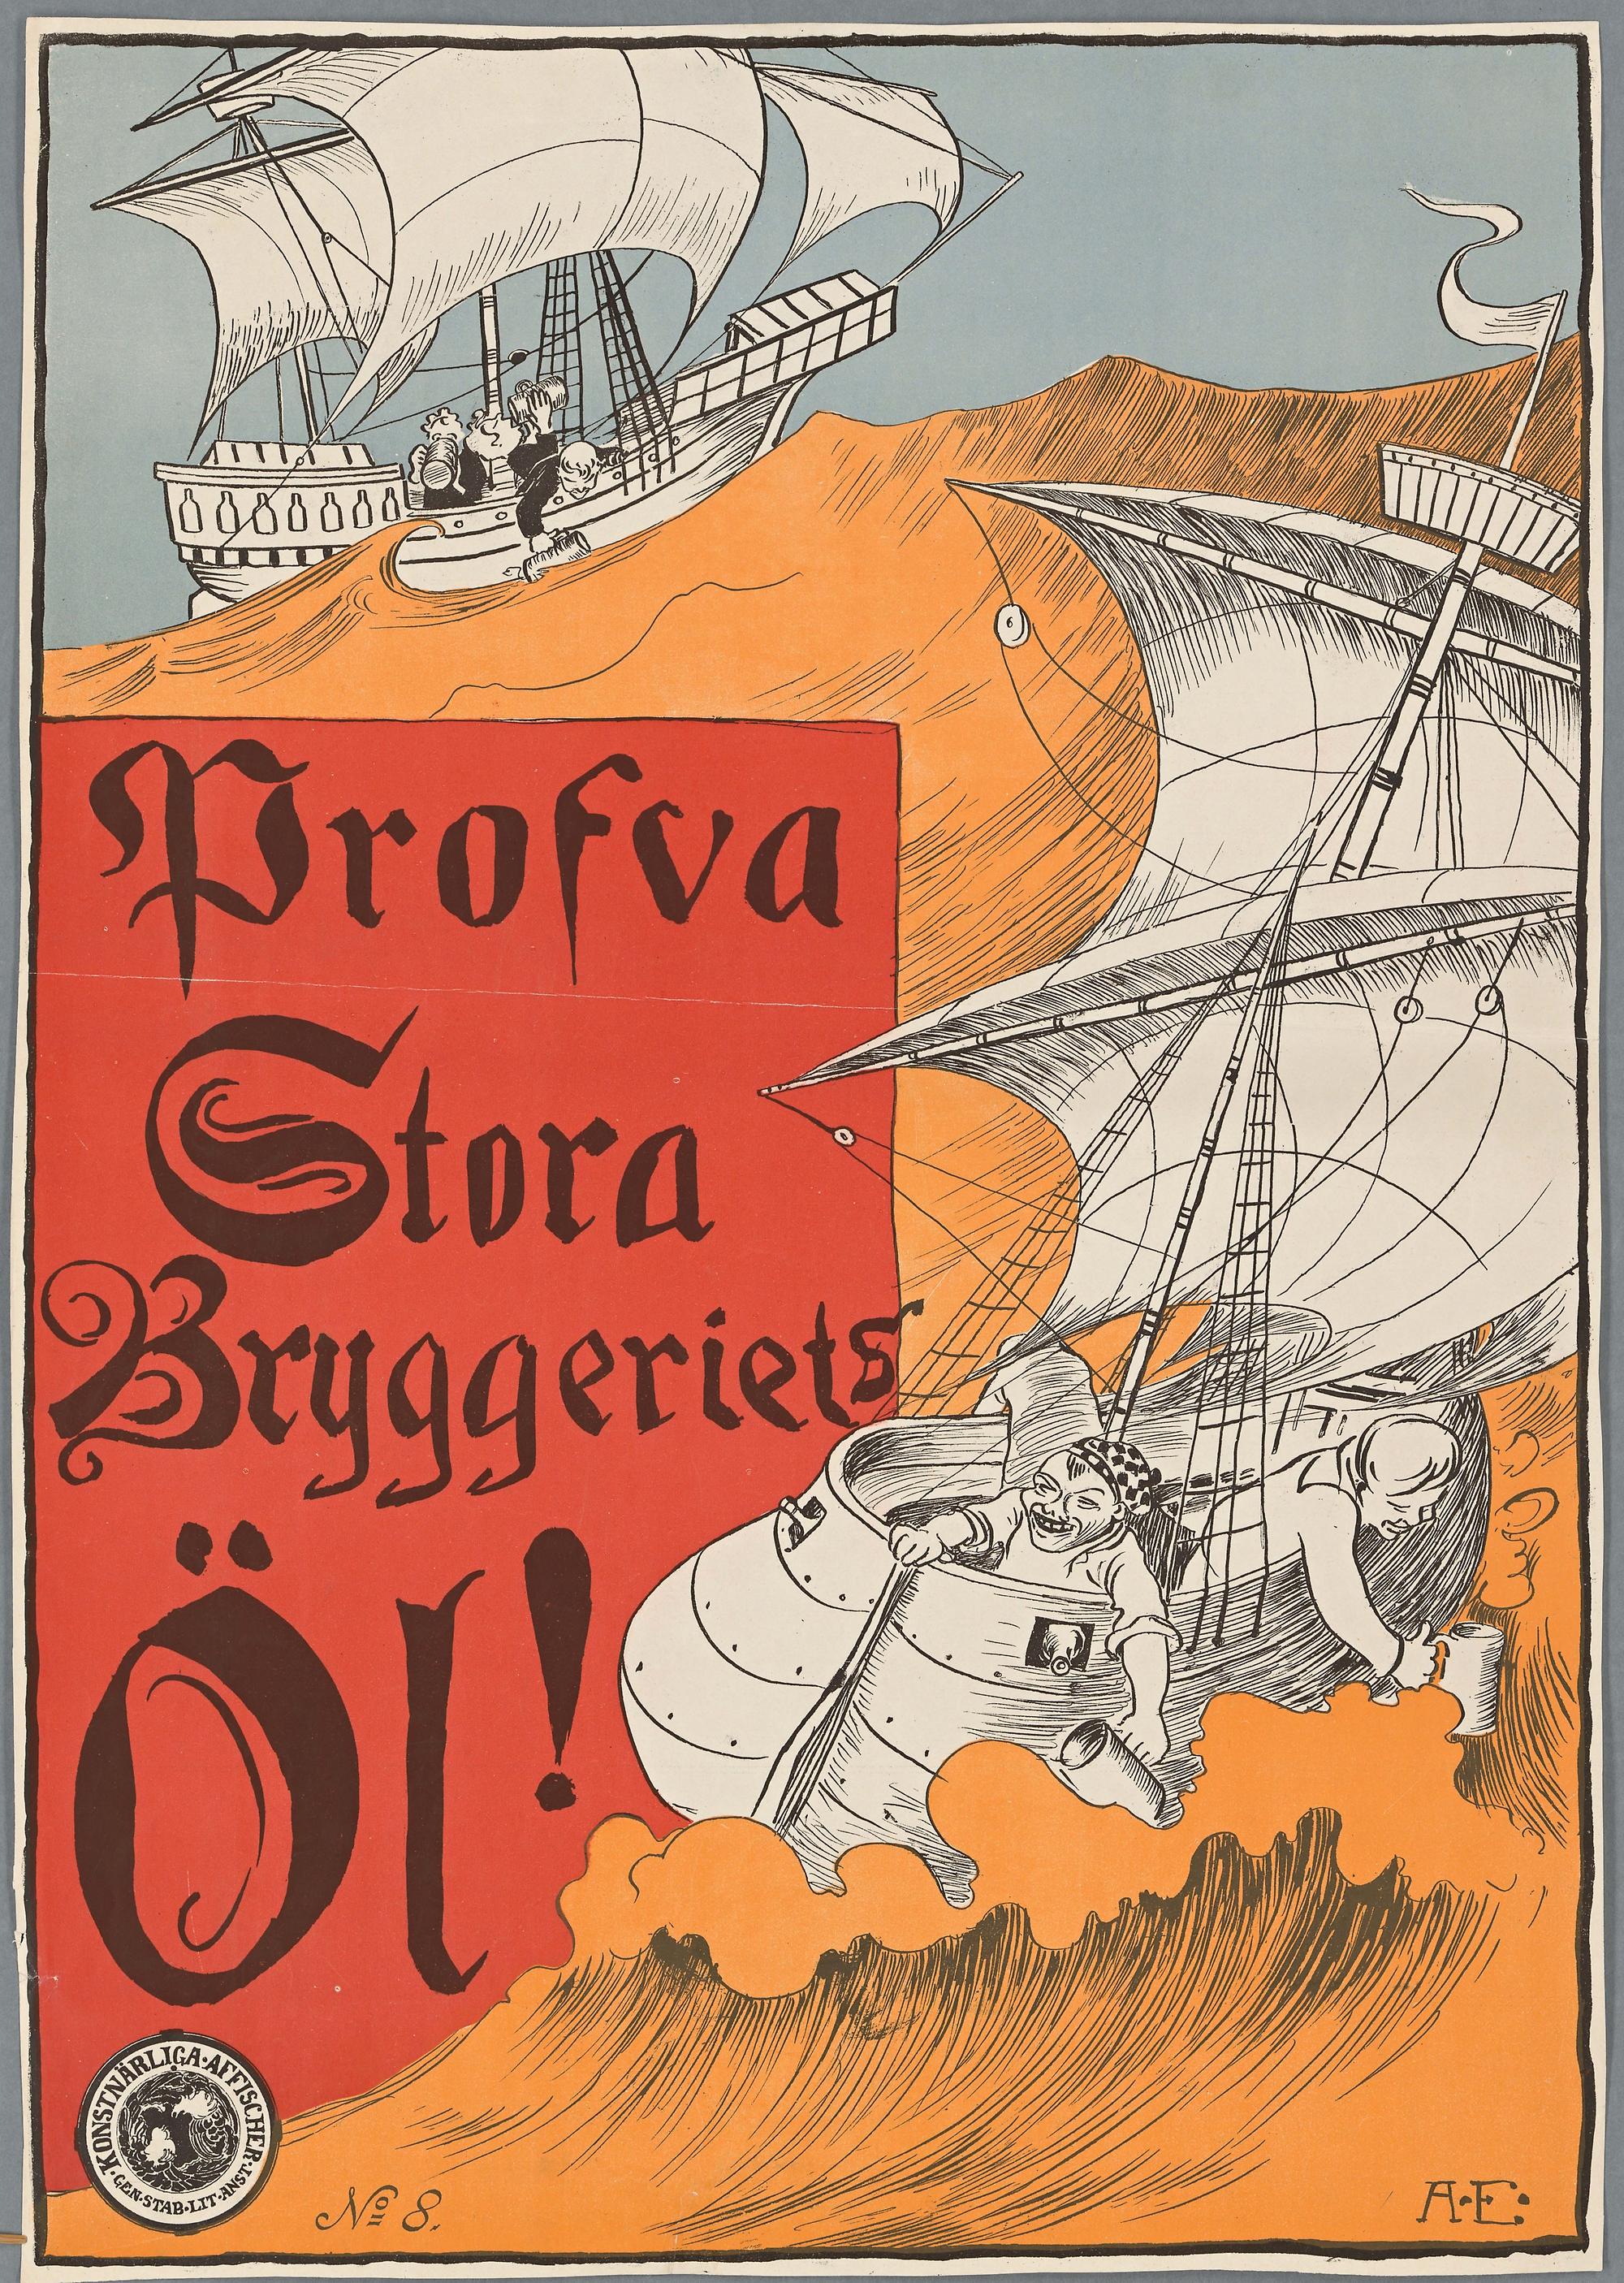 Affisch för Stora Bryggeriets Öl som föreställer två skepp som seglar på ett oroligt gult hav som skall föreställa öl. Besättningarna på båtarna fyller sina sejdlar från relingen